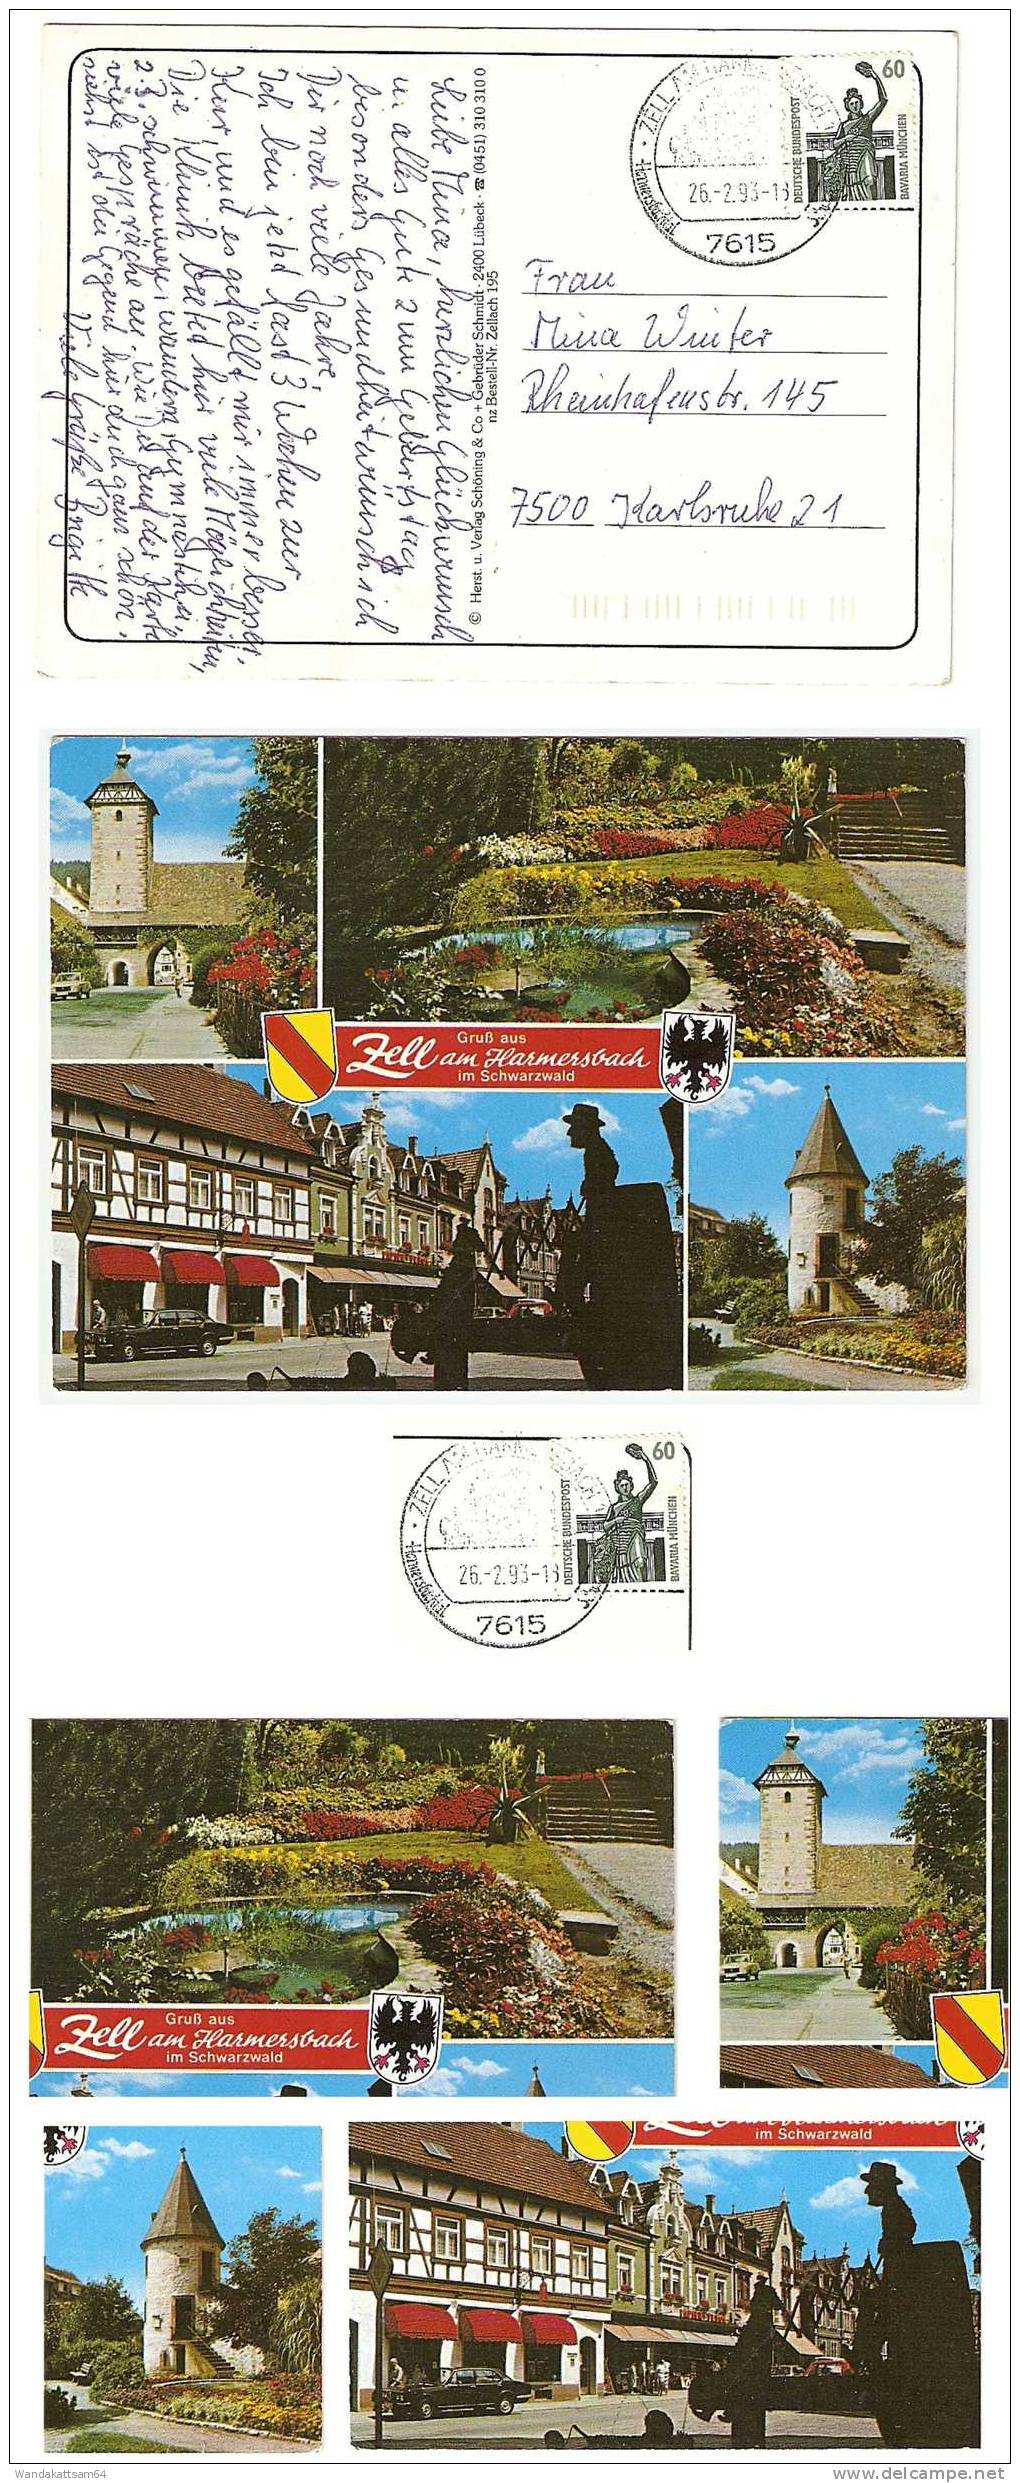 AK 195 Zell Am Harmersbach Im Schwarzwald Gruß Aus Mehrbildkarte 4 Bilder Straßenpartie Türme Parkanlage 26.2..93-18 - Haslach